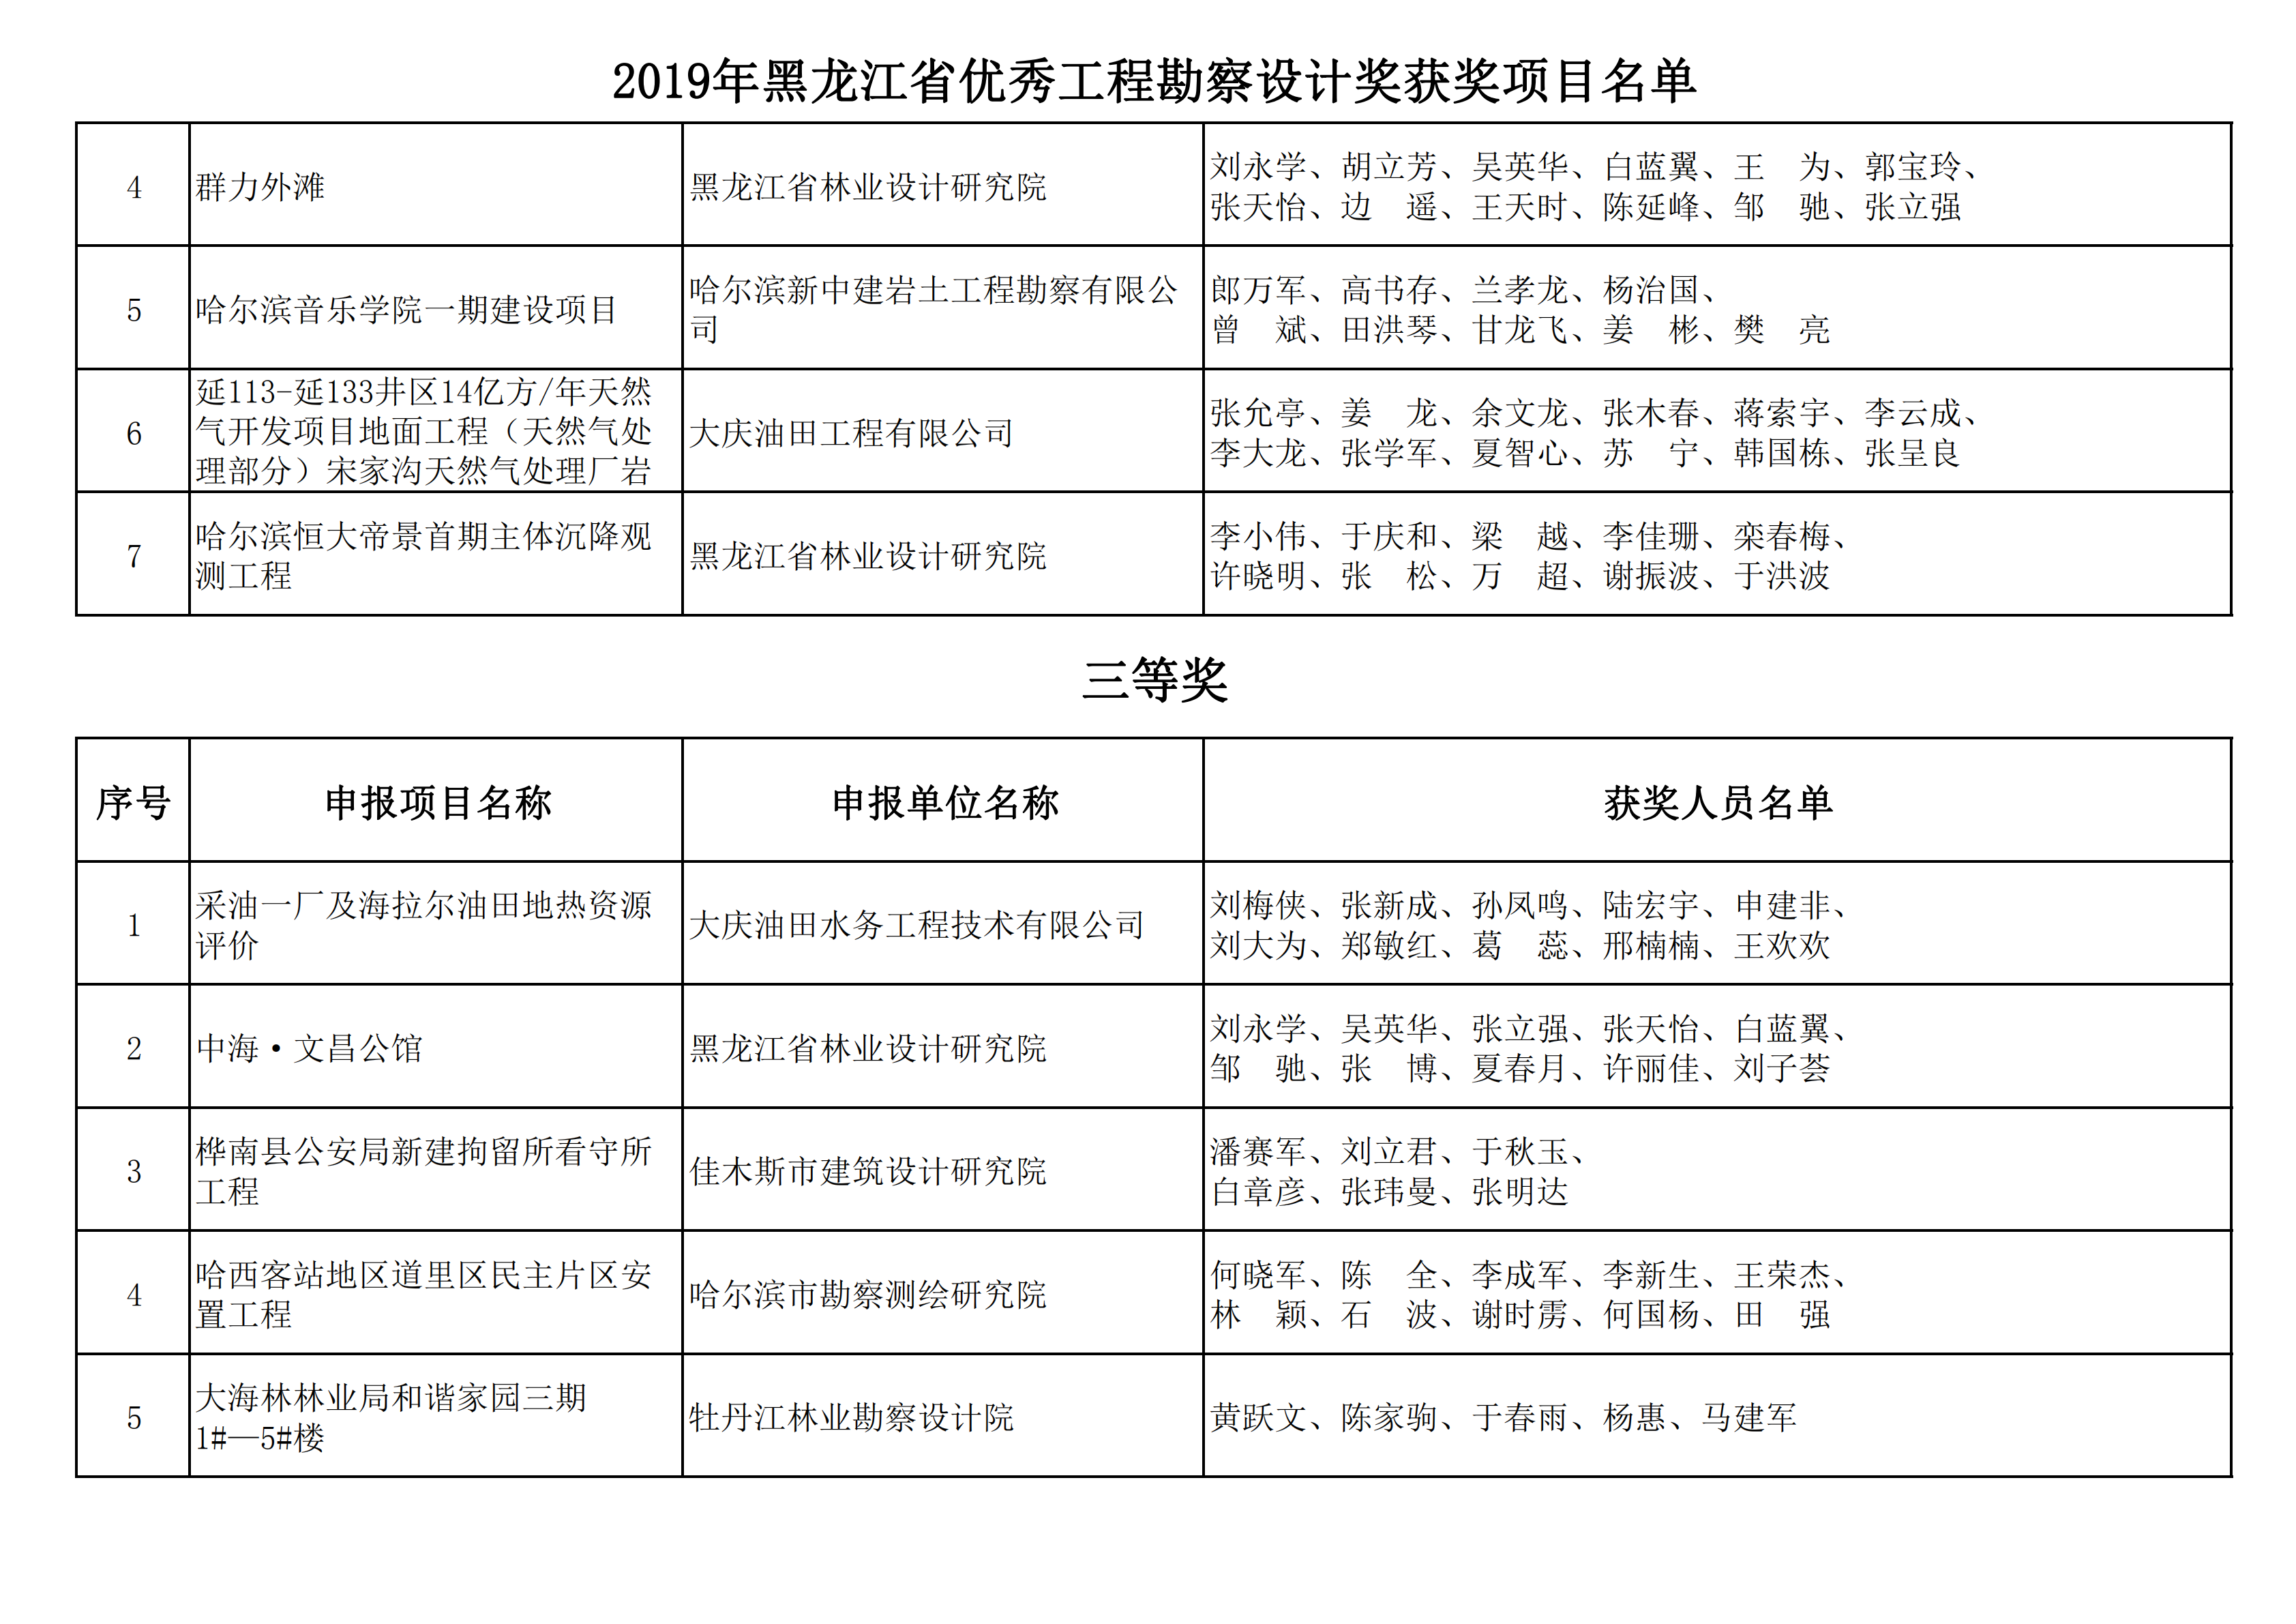 2019年黑龙江省优秀工程勘察设计奖获奖项目名单_22.png